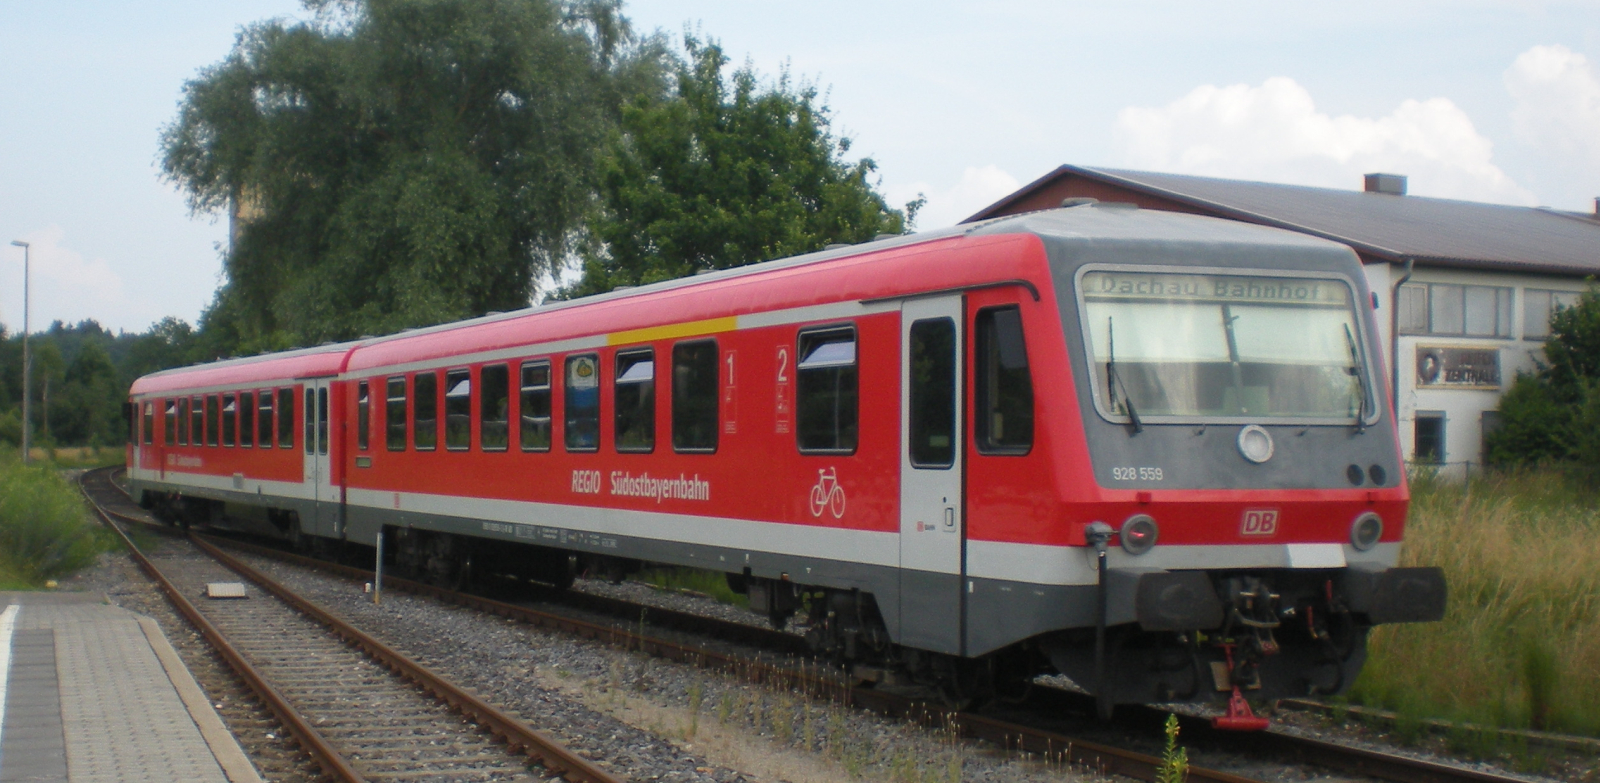 Class 628<sup>4</sup> in July 2013 in Markt Indersdorf